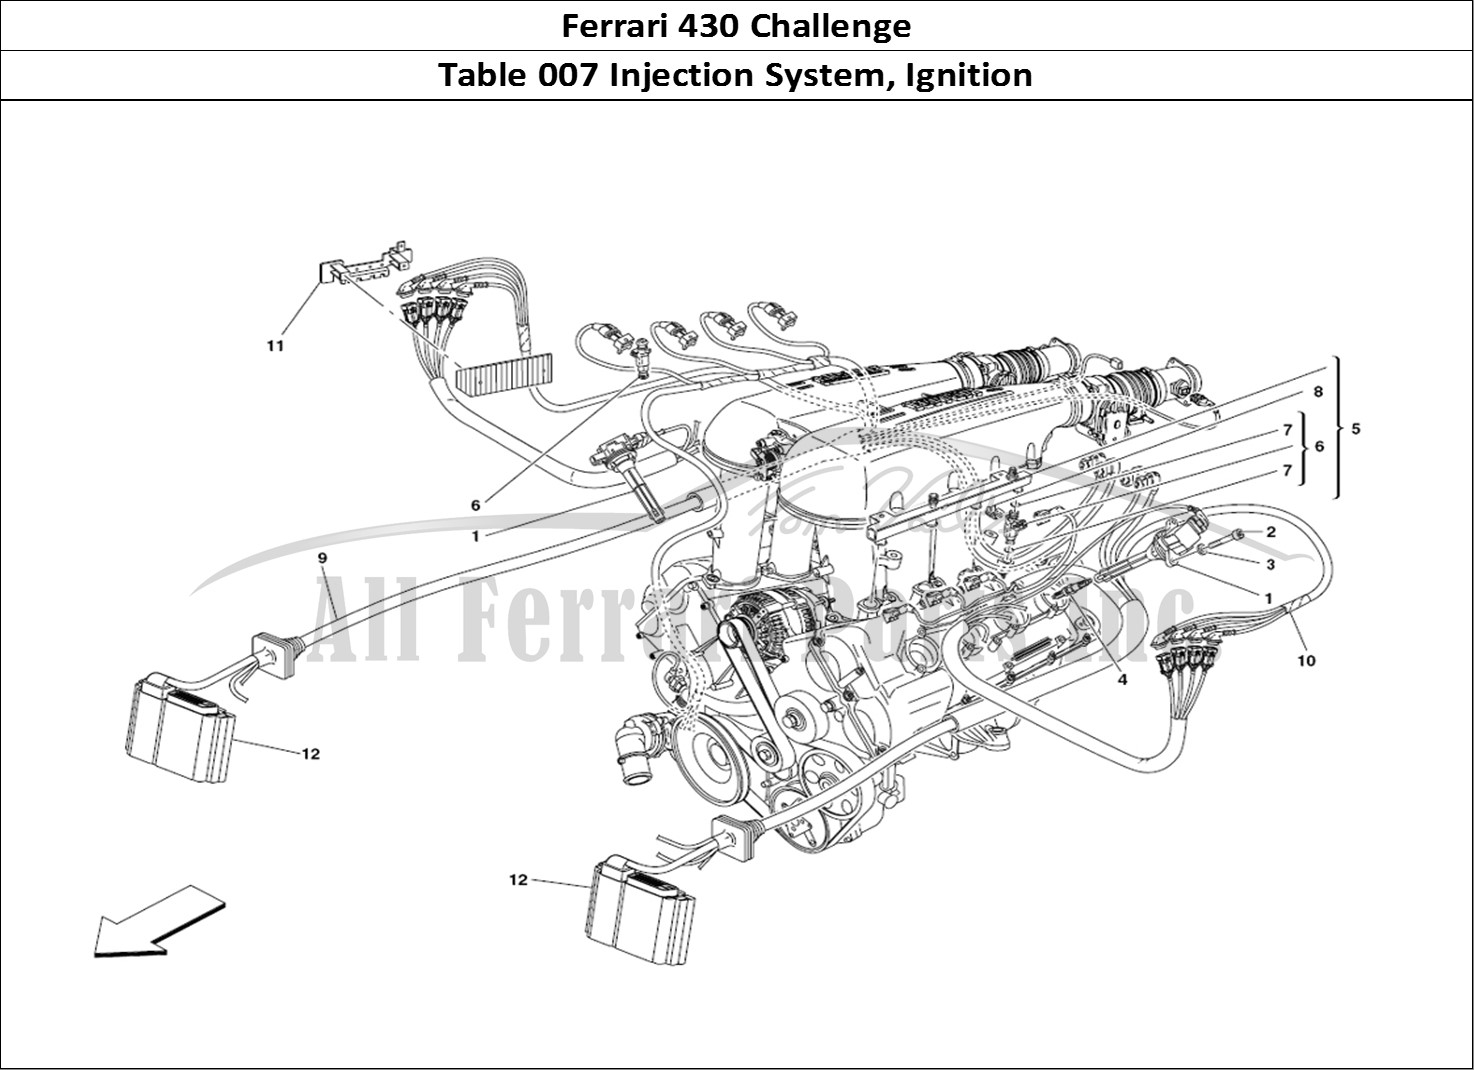 Ferrari Parts Ferrari 430 Challenge (2006) Page 007 Injection Device - igniti